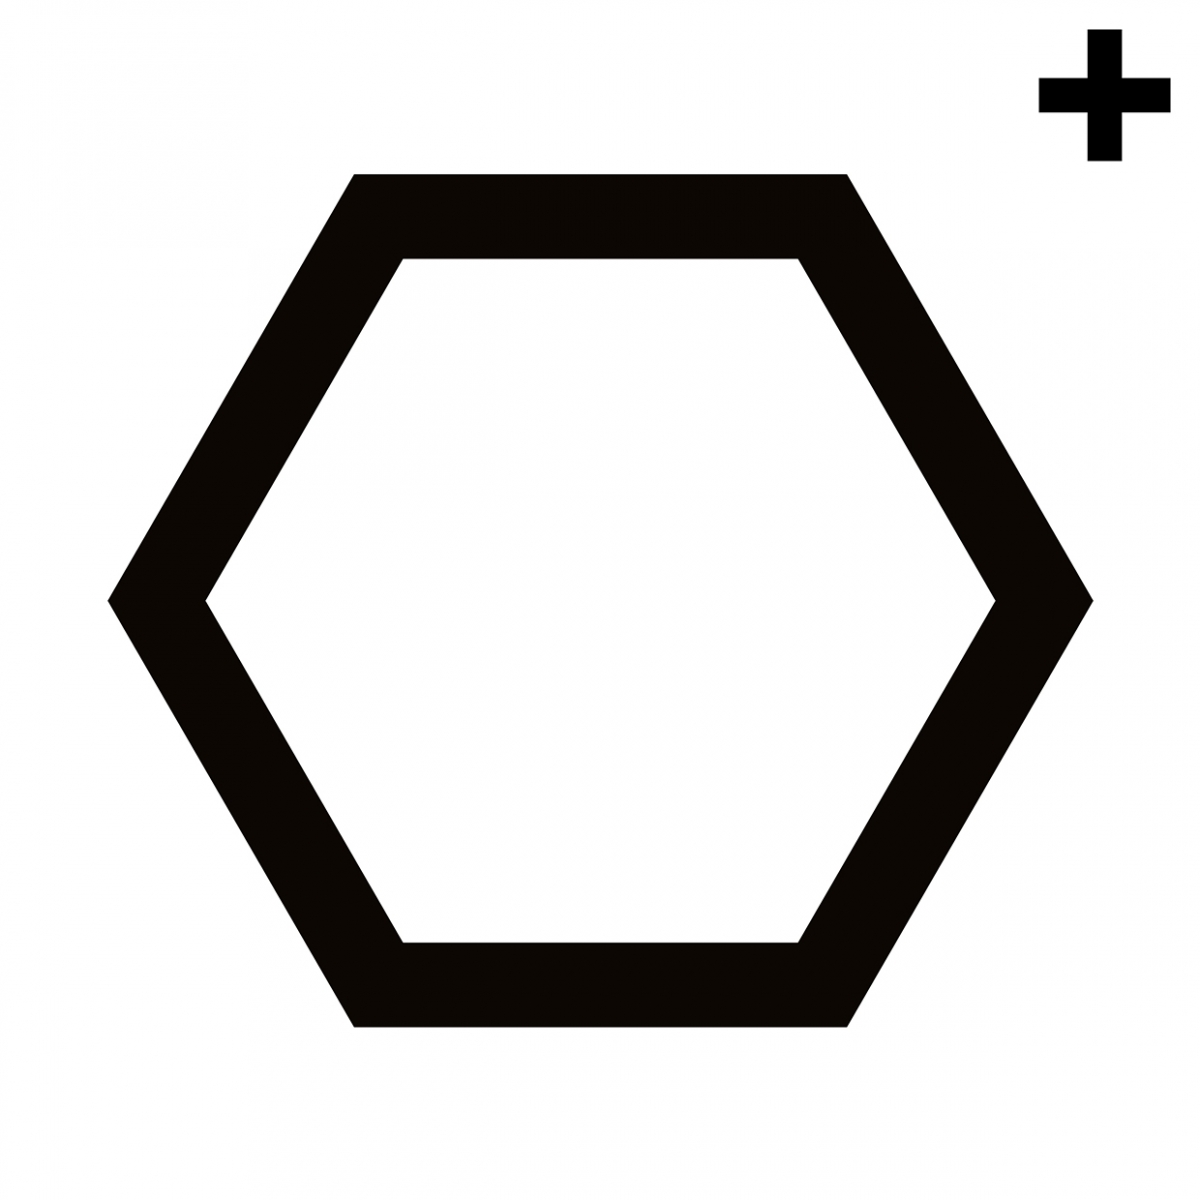 Imagen en la que se ve un hexágono con el trazo en color negro